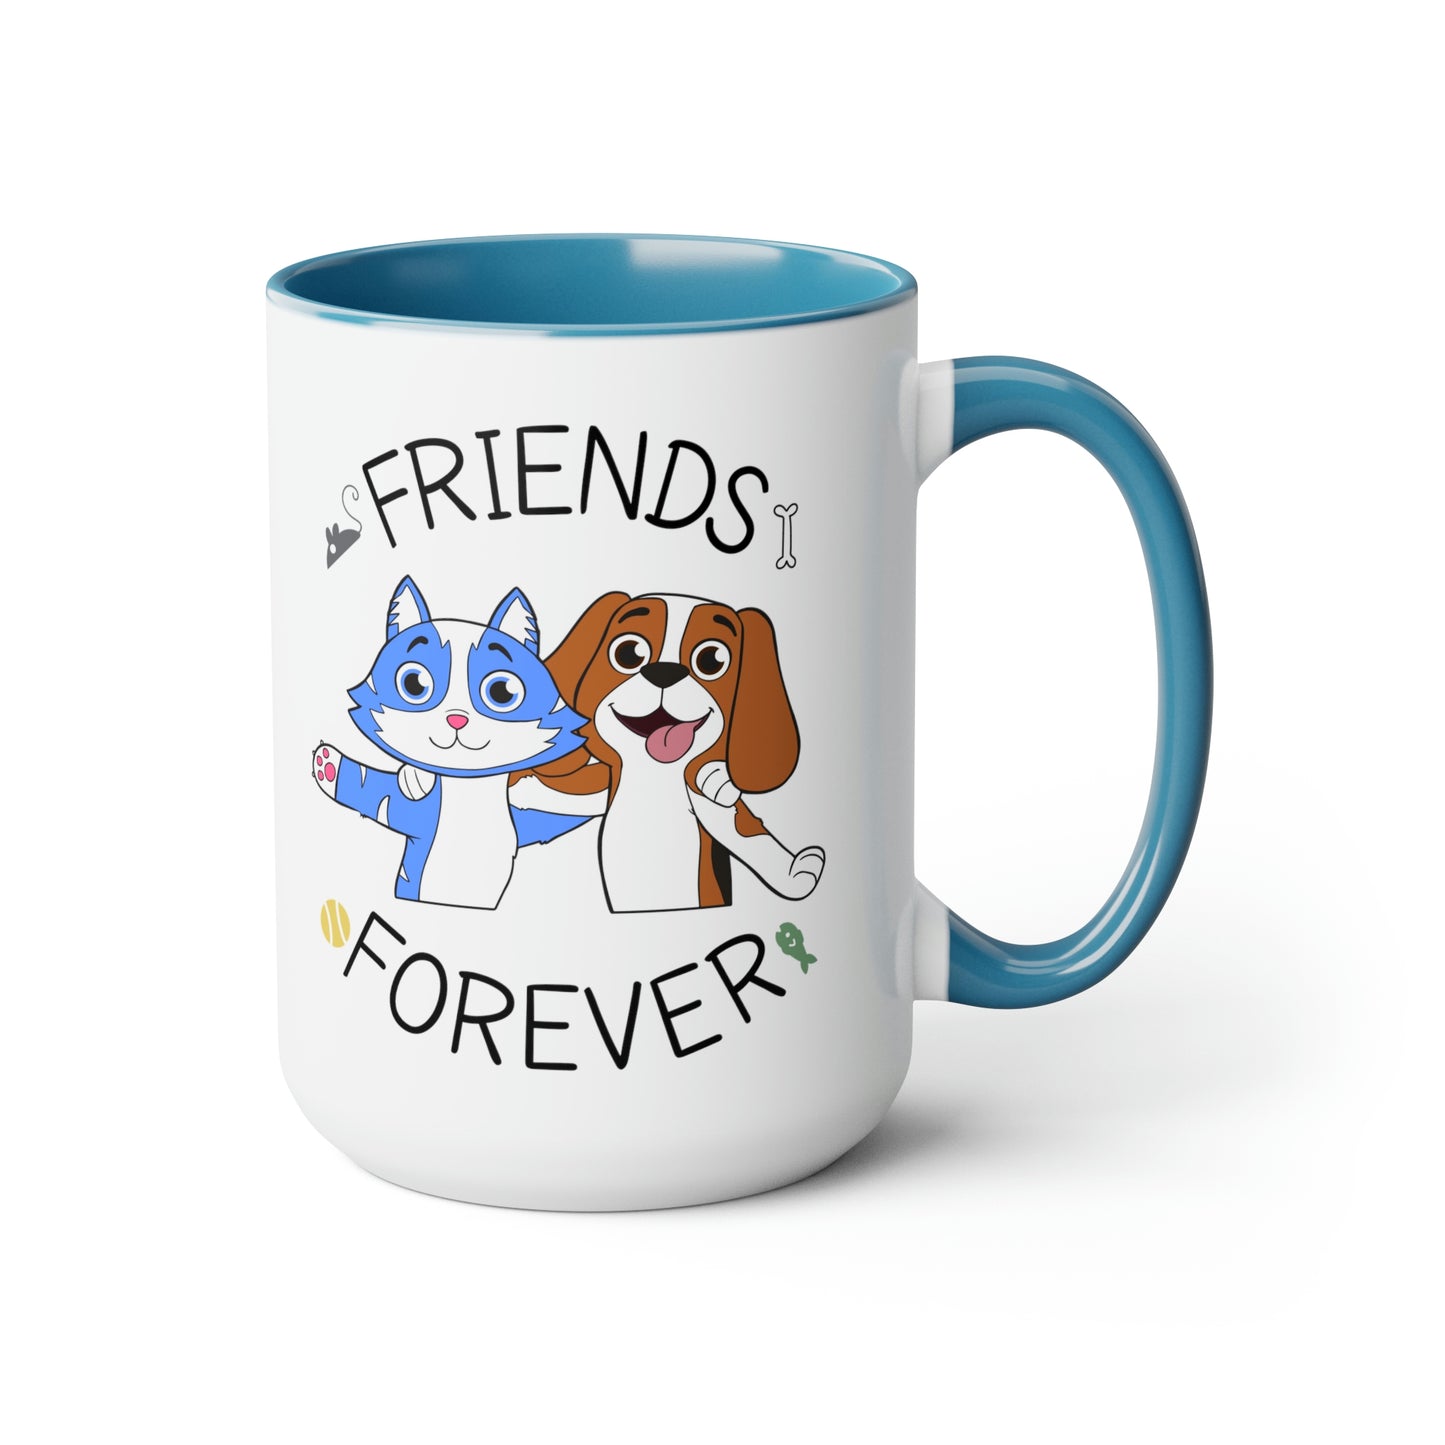 Friends Forever Premium Coffee Mug, 15oz